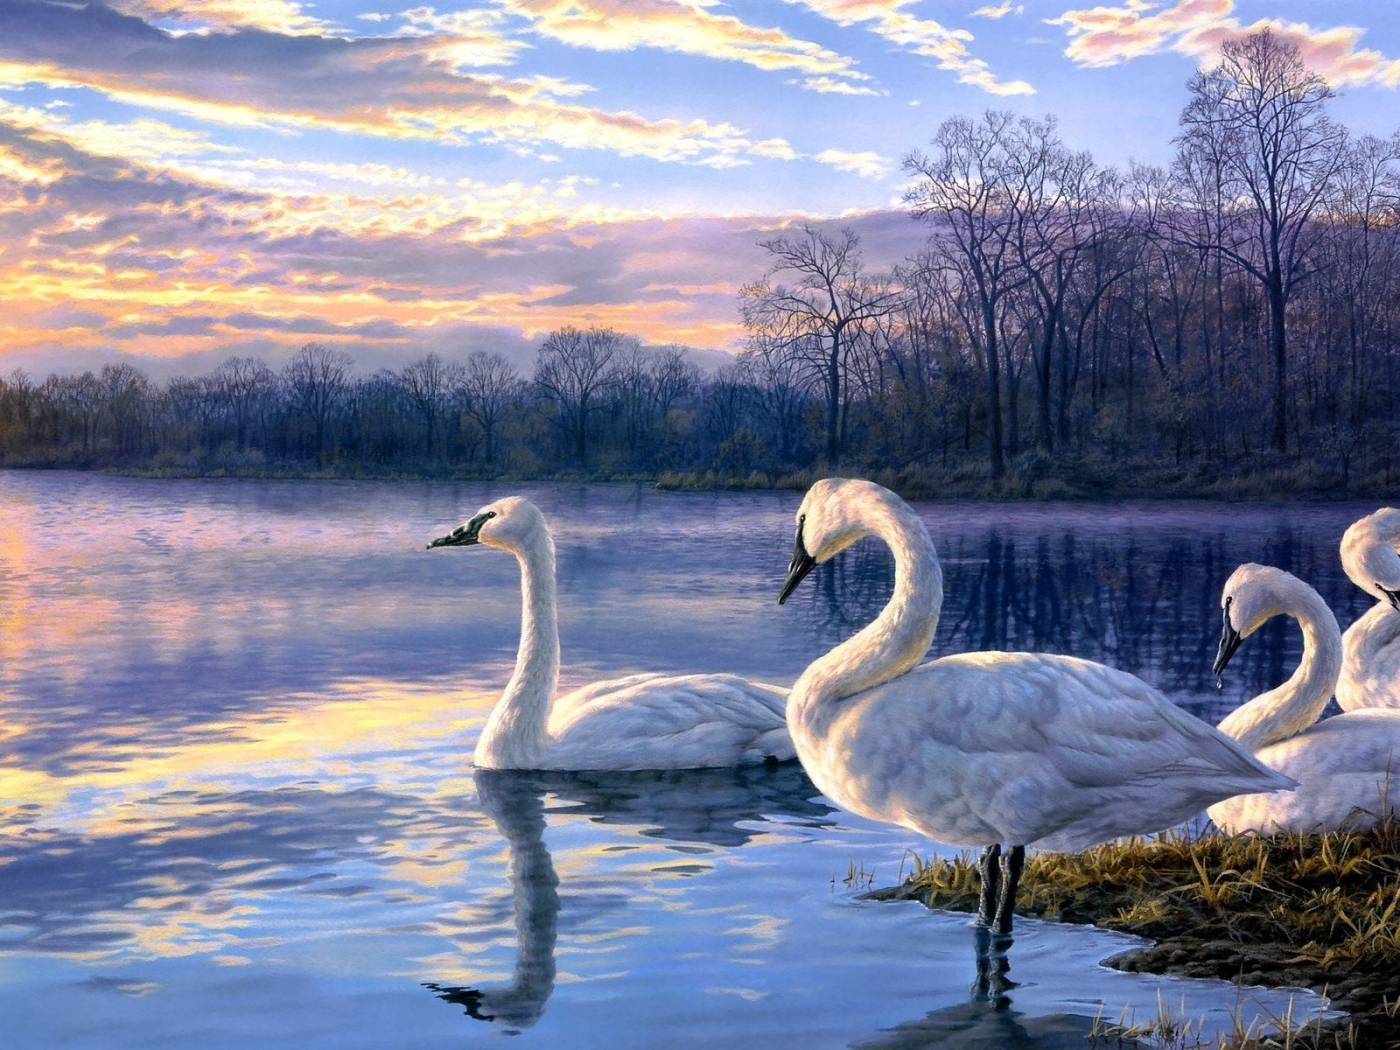 207 Moonlight Swan Images, Stock Photos & Vectors | Shutterstock